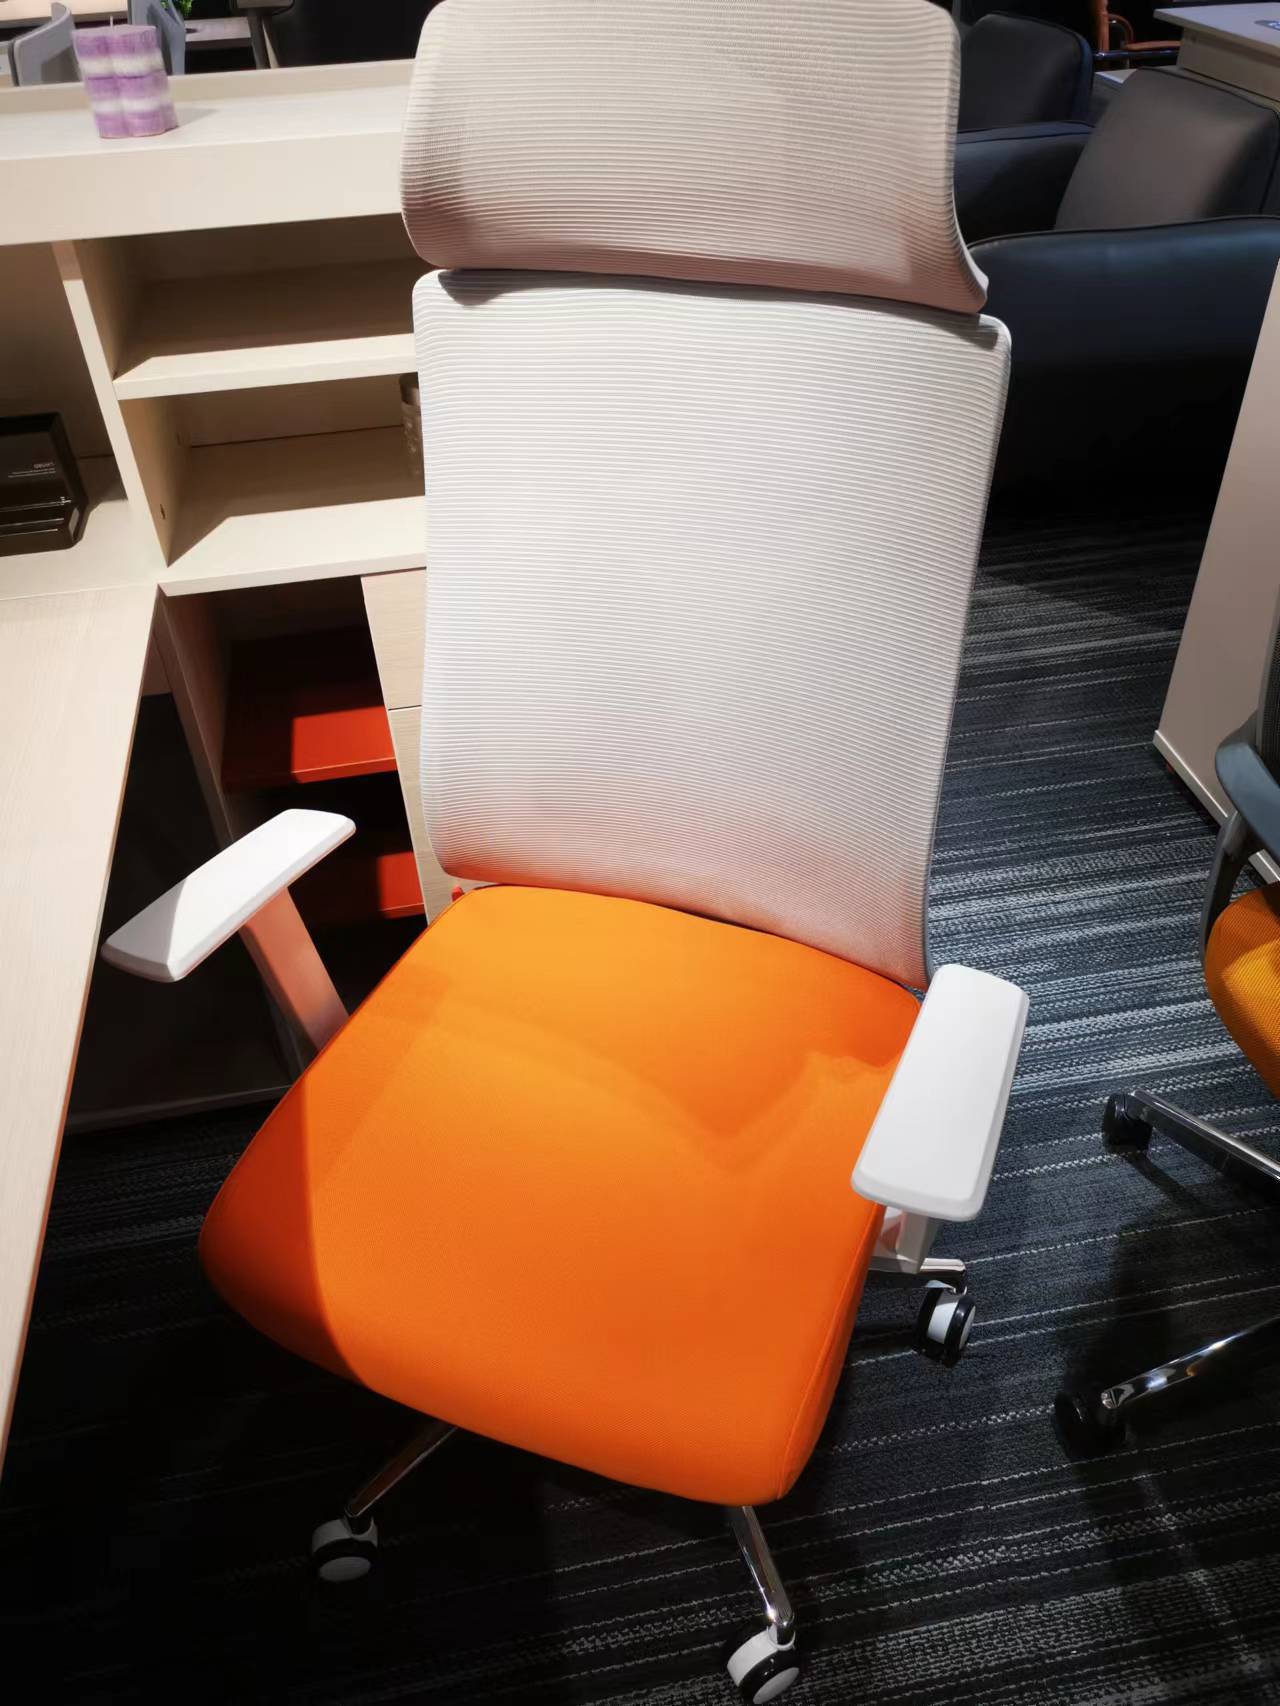 VOFFOV® Mesh Ergonomic Chair, Premium Office & Computer Chair with Adjustable Headrest - Orange Grey